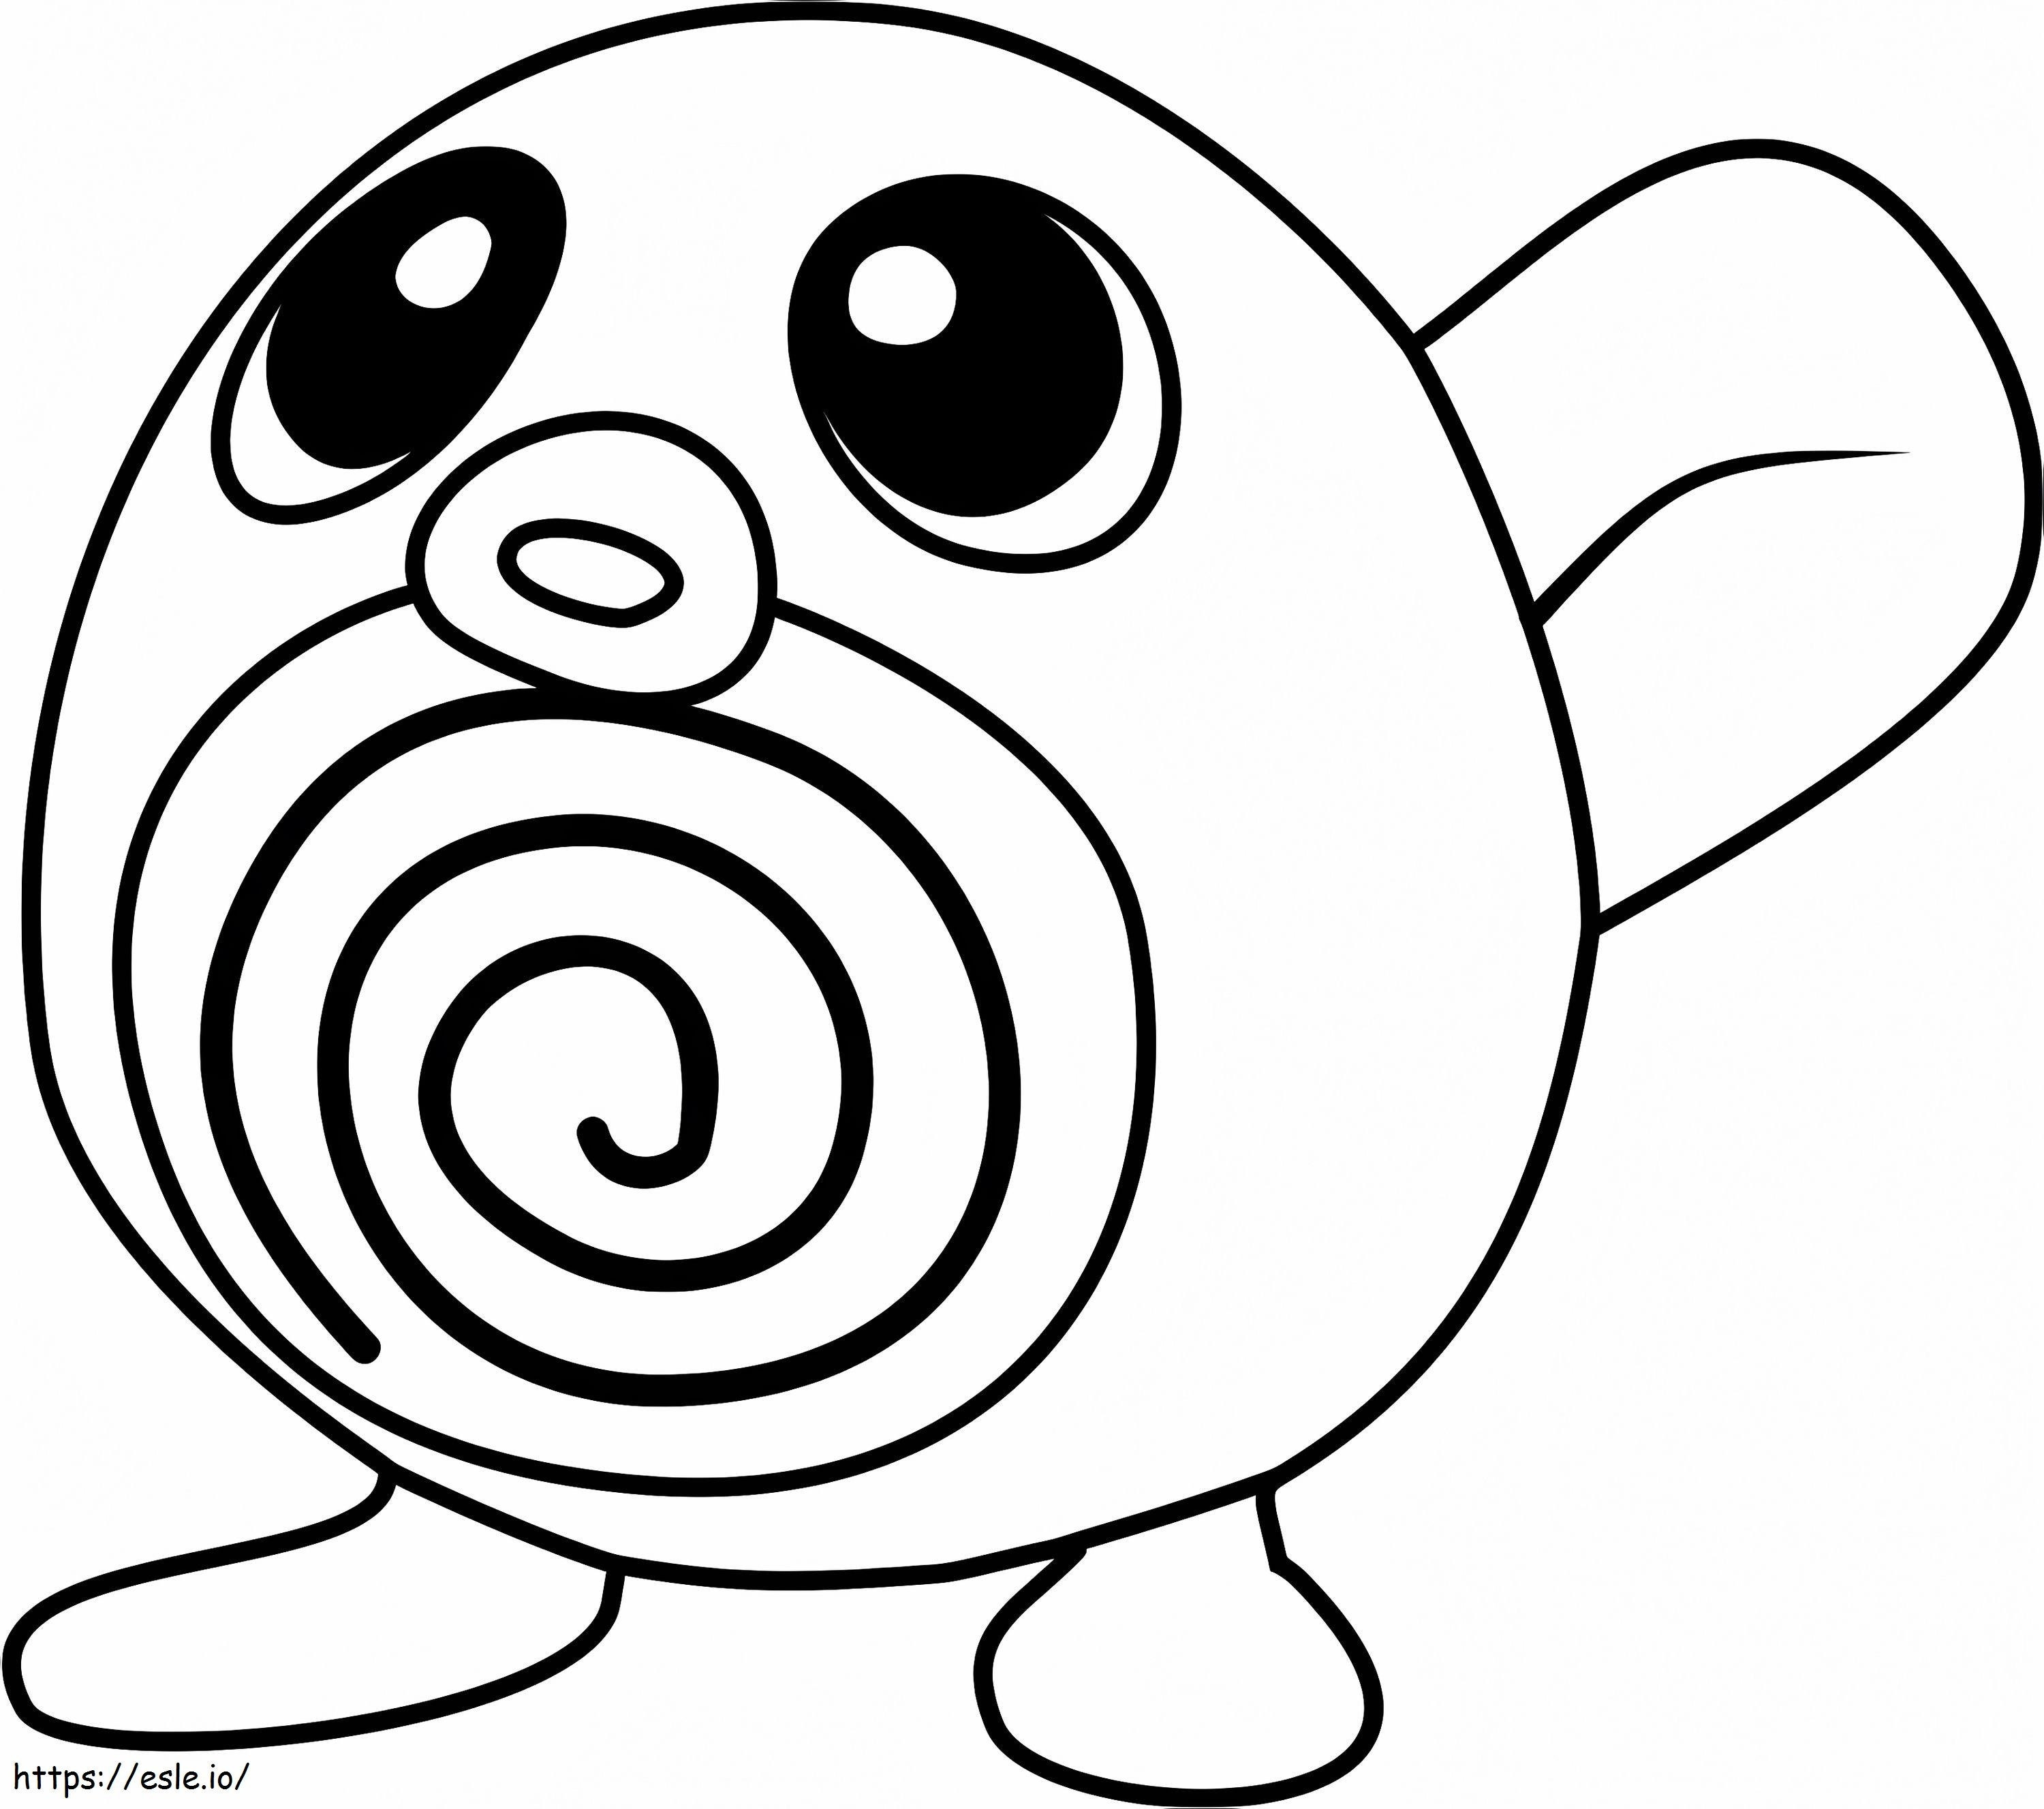 Coloriage 1530845689 Poliwag Pokémon Go A4 à imprimer dessin